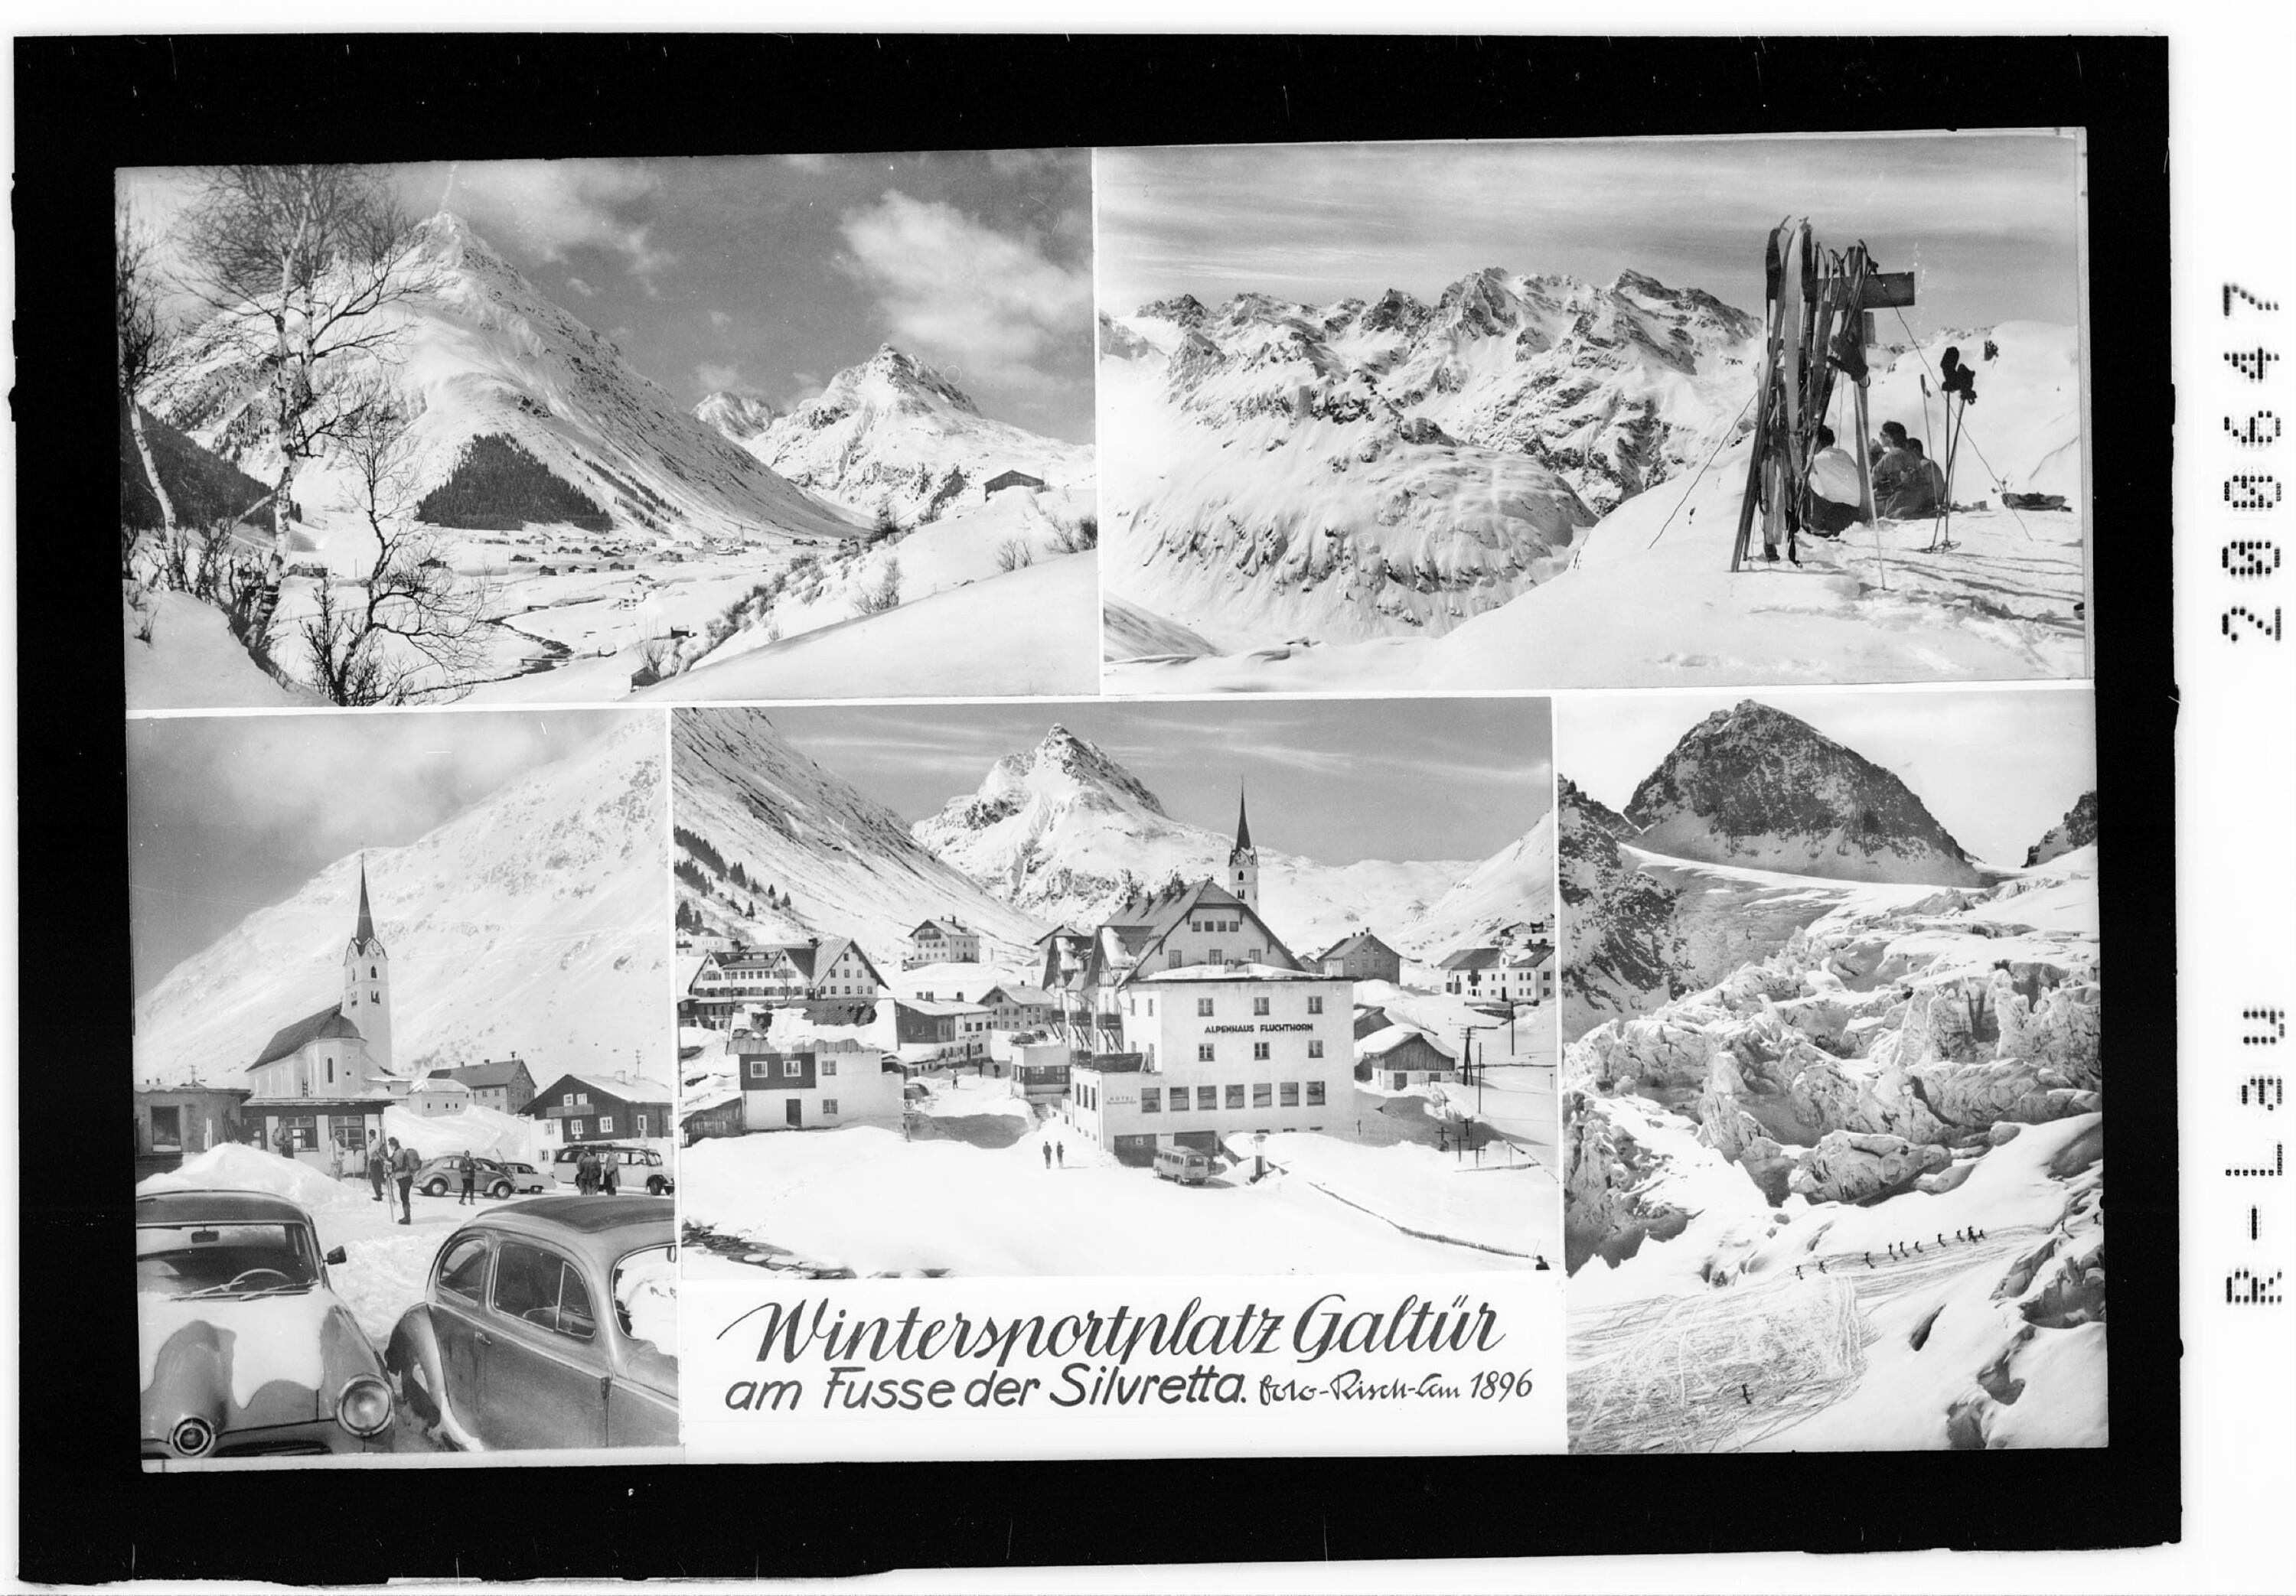 Wintersportplatz Galtür am Fusse der Silvretta></div>


    <hr>
    <div class=